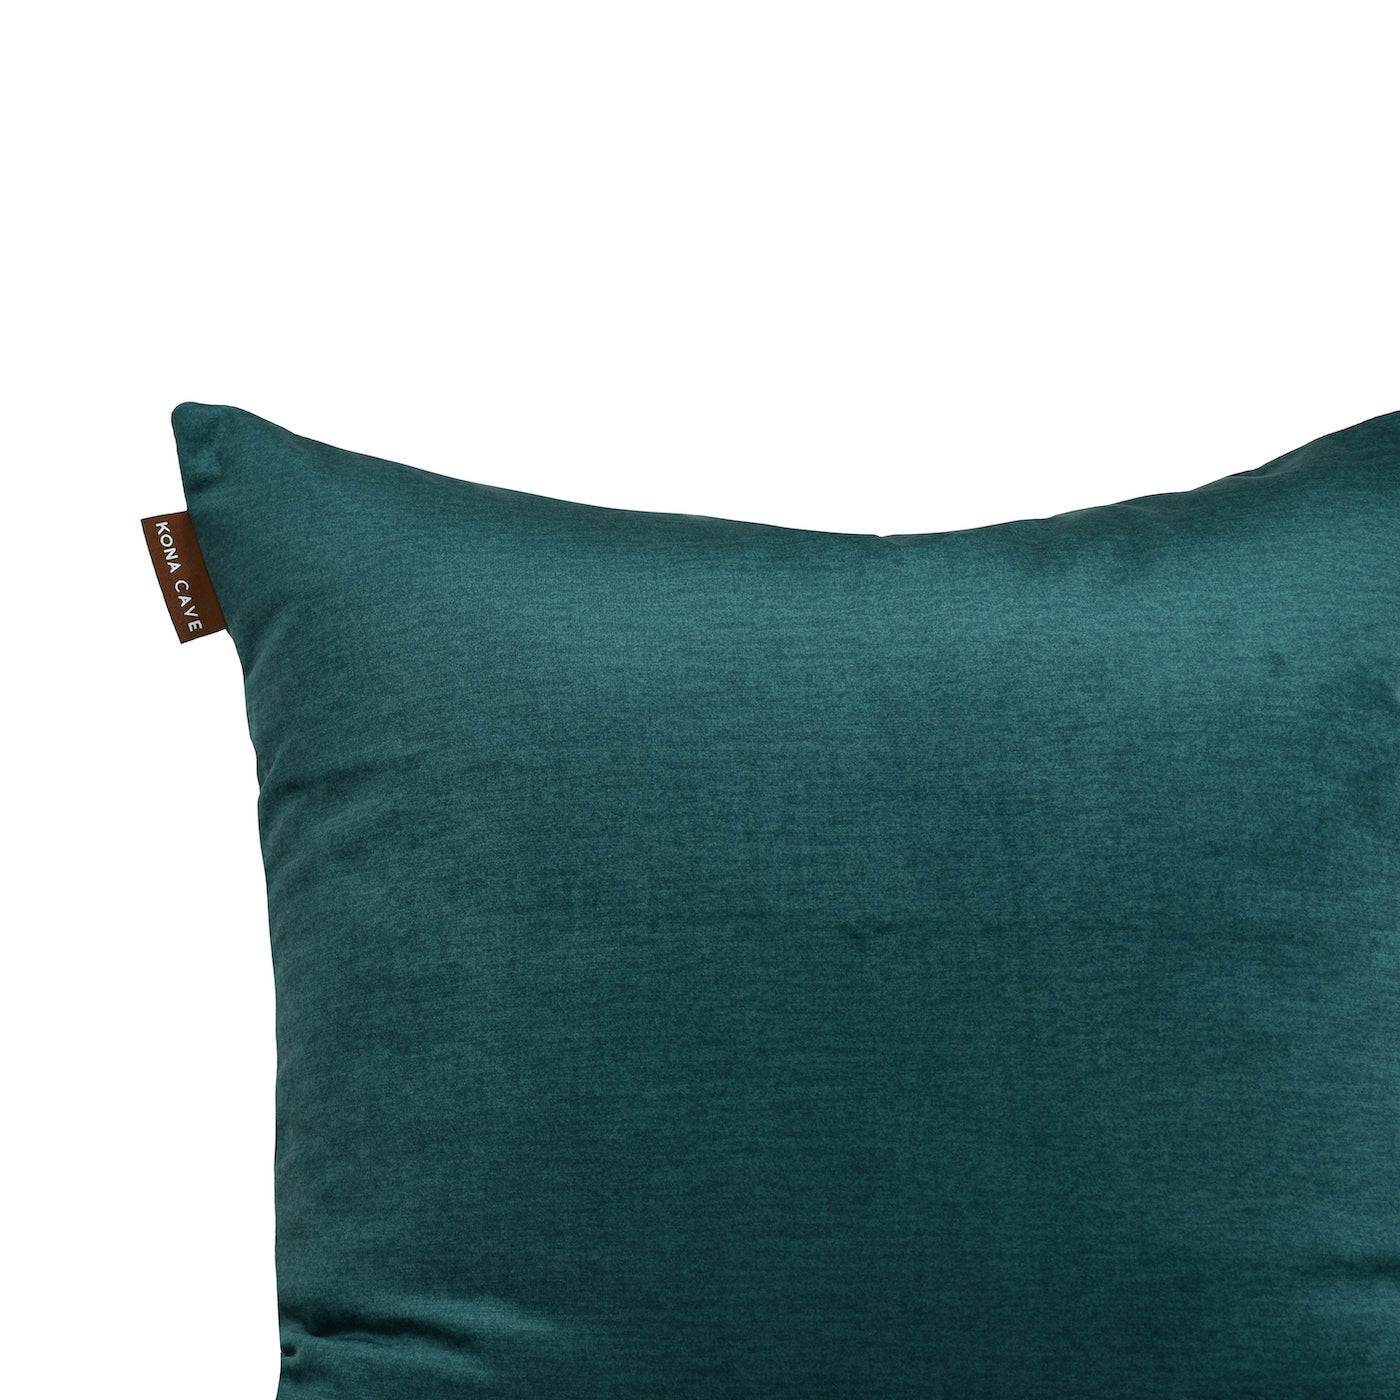 KONA CAVE® Luxury pillow cover in emerald green velvet 50x50